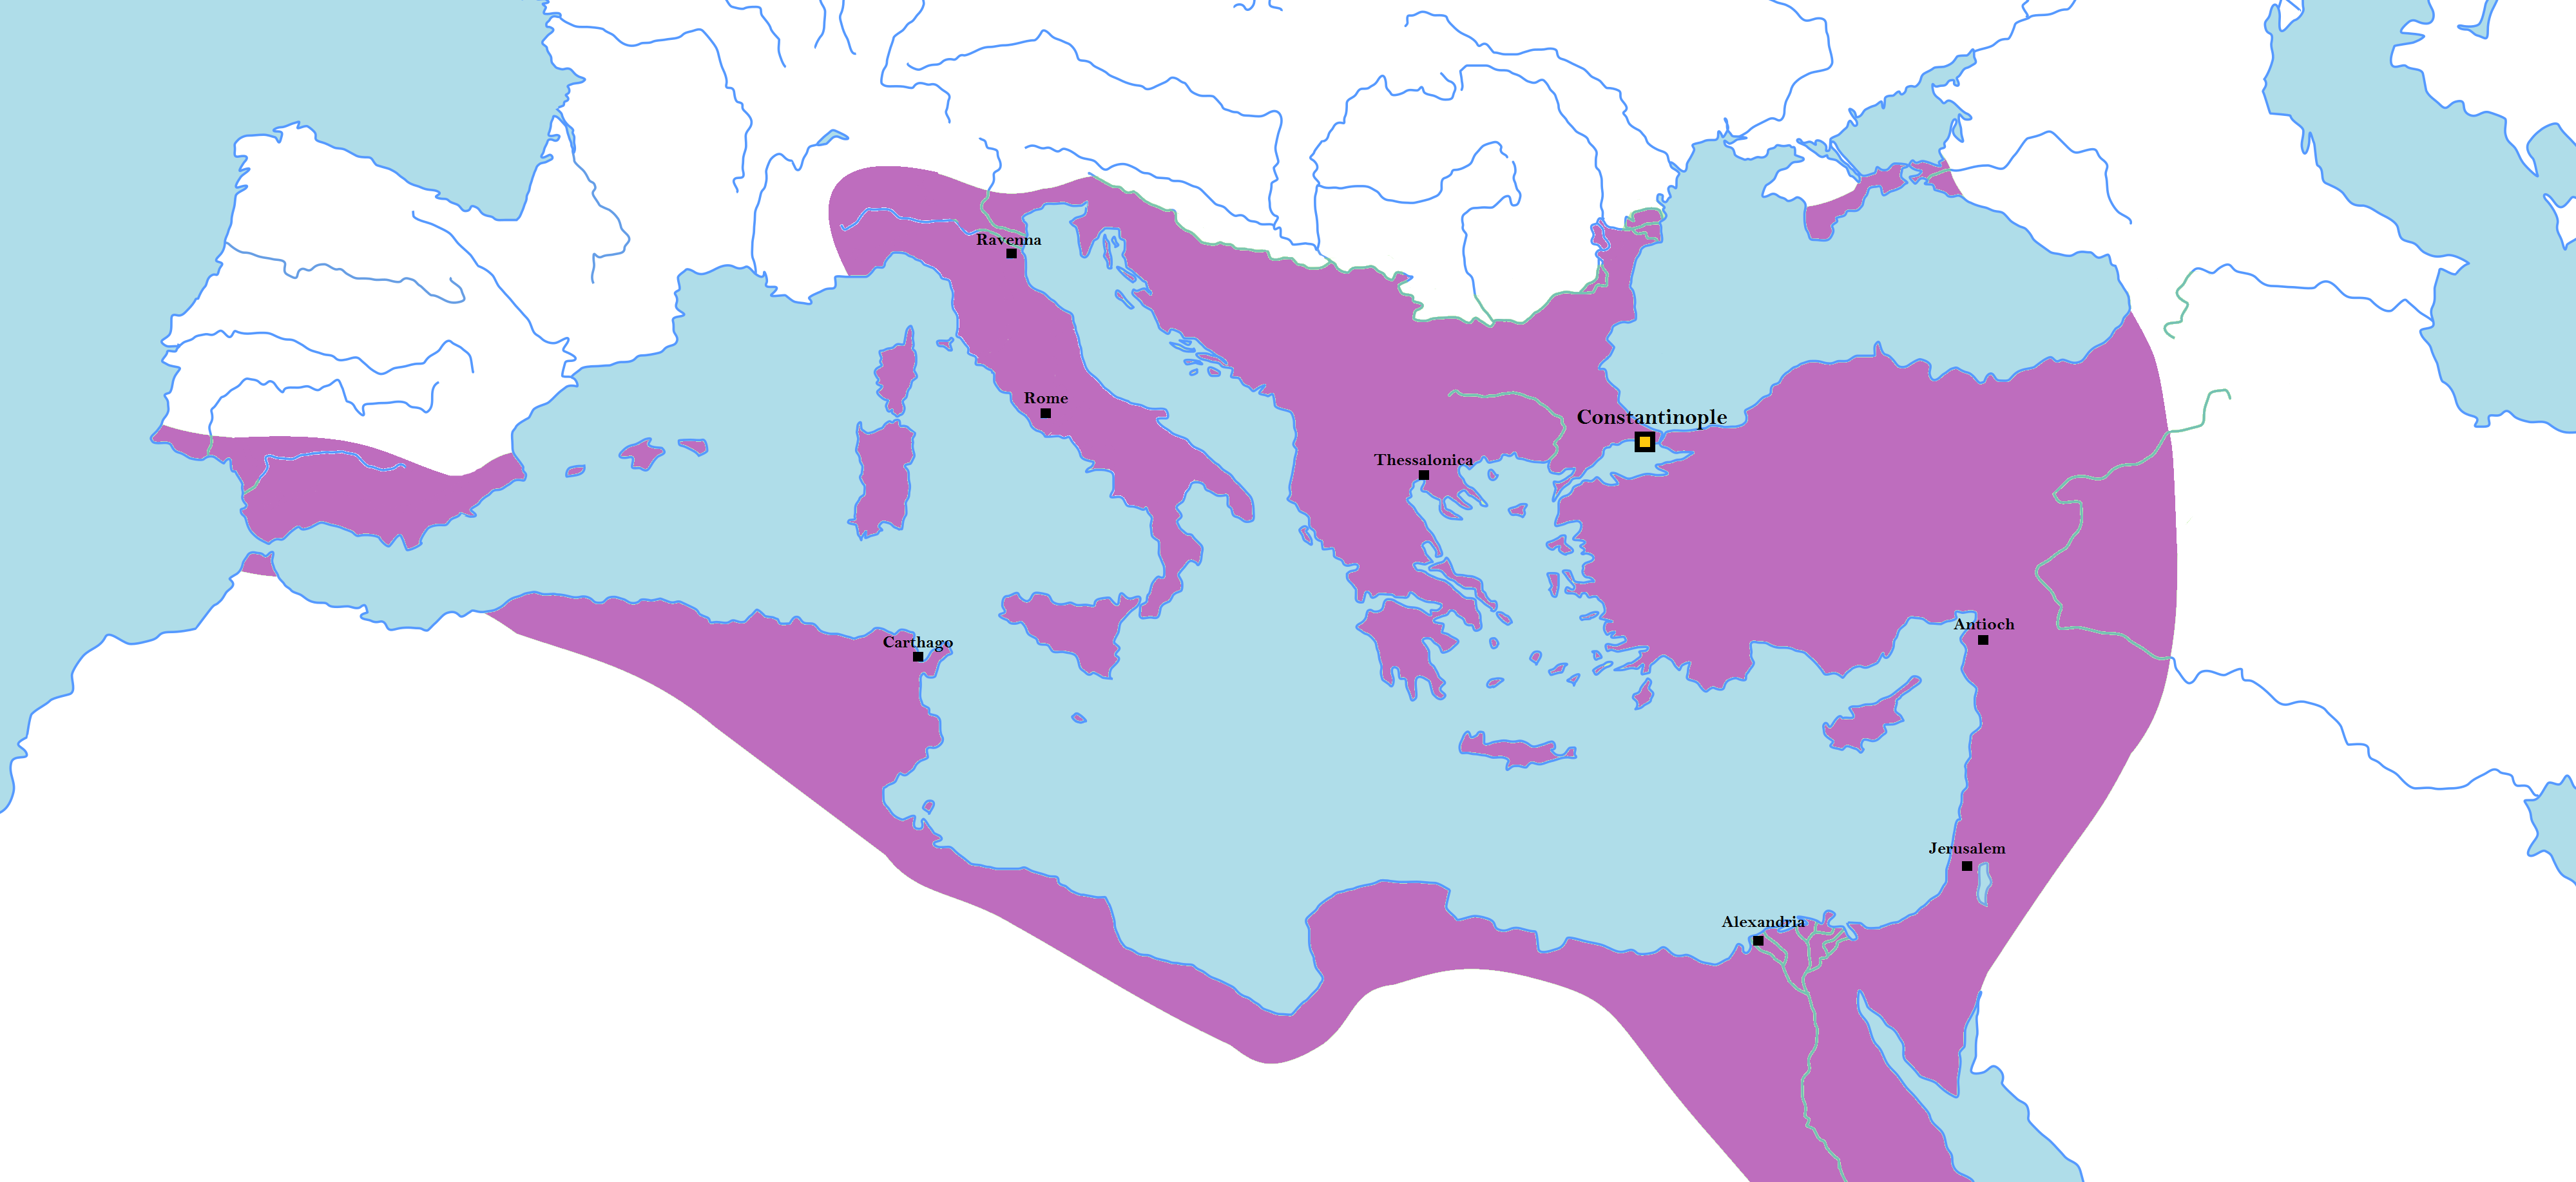 Byzantium at its maximum extent in 555CE